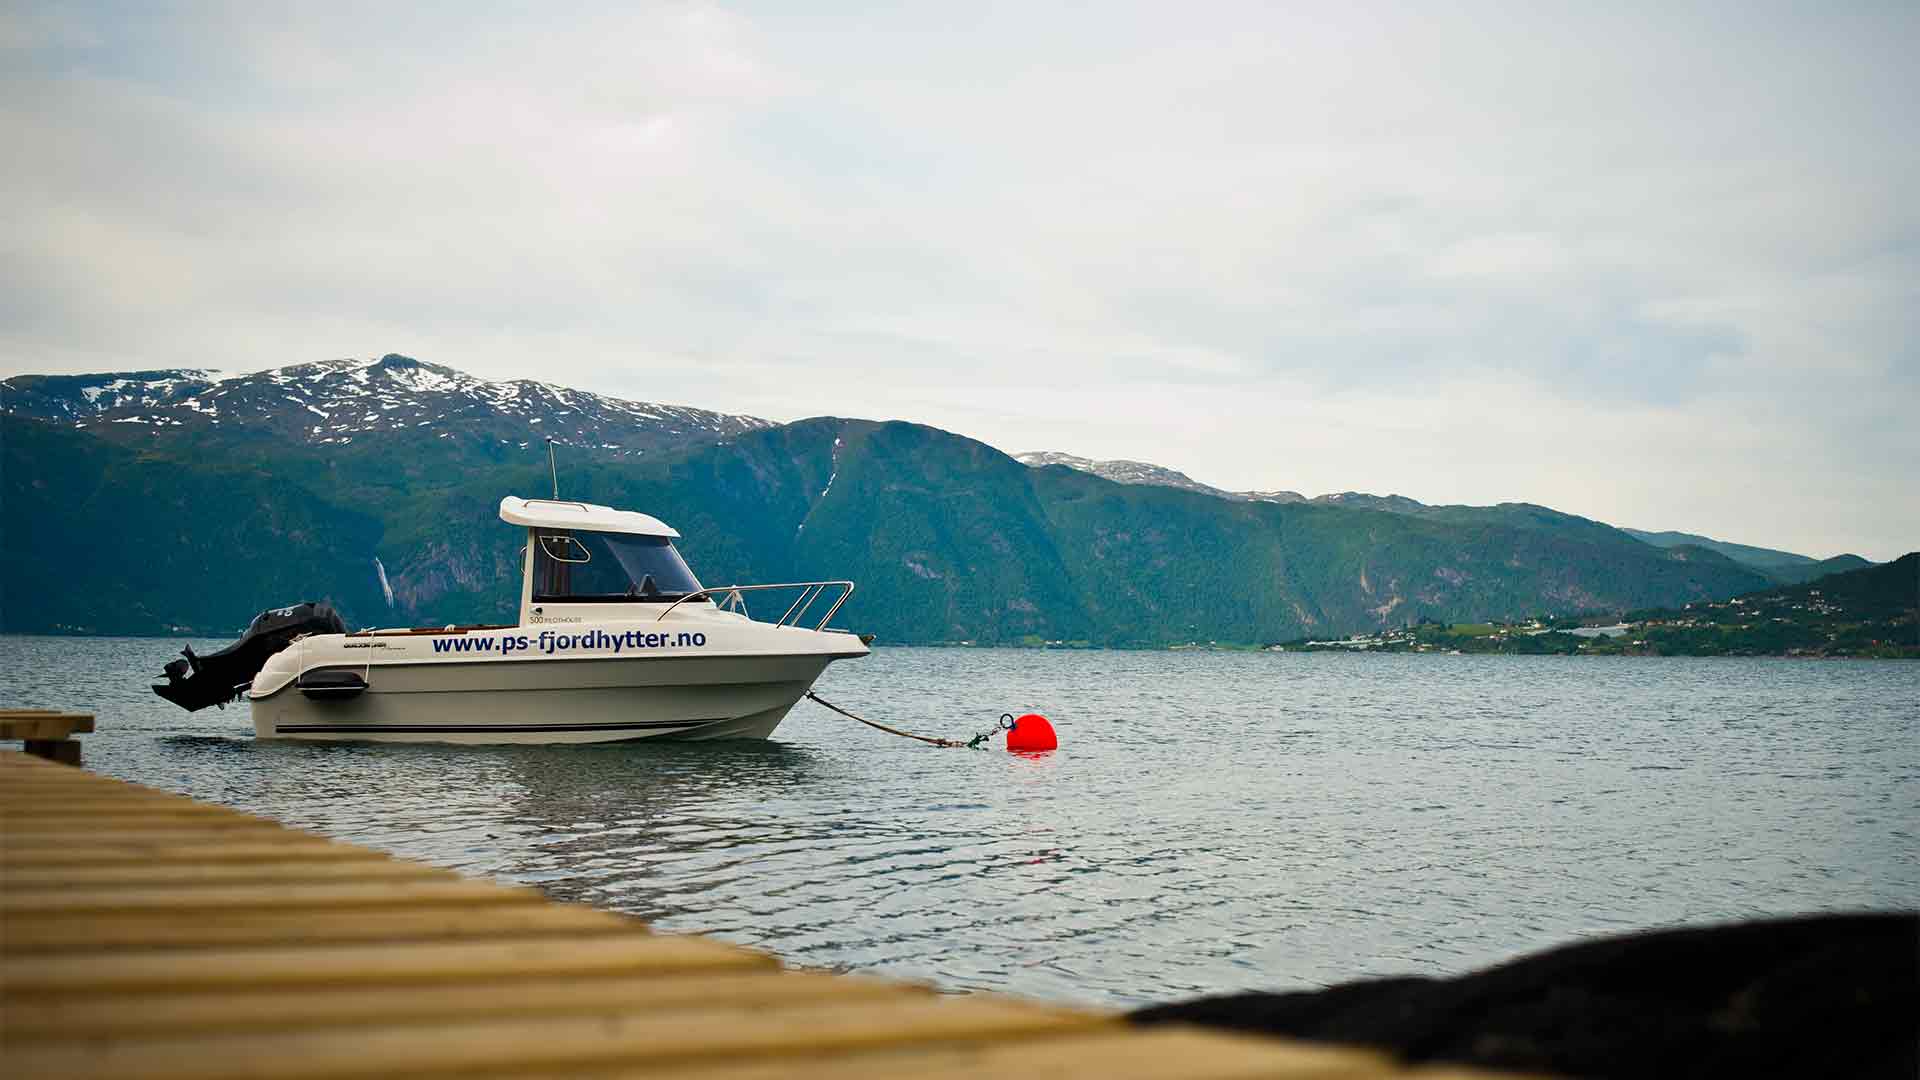 ps-fjordhytter sognefjord